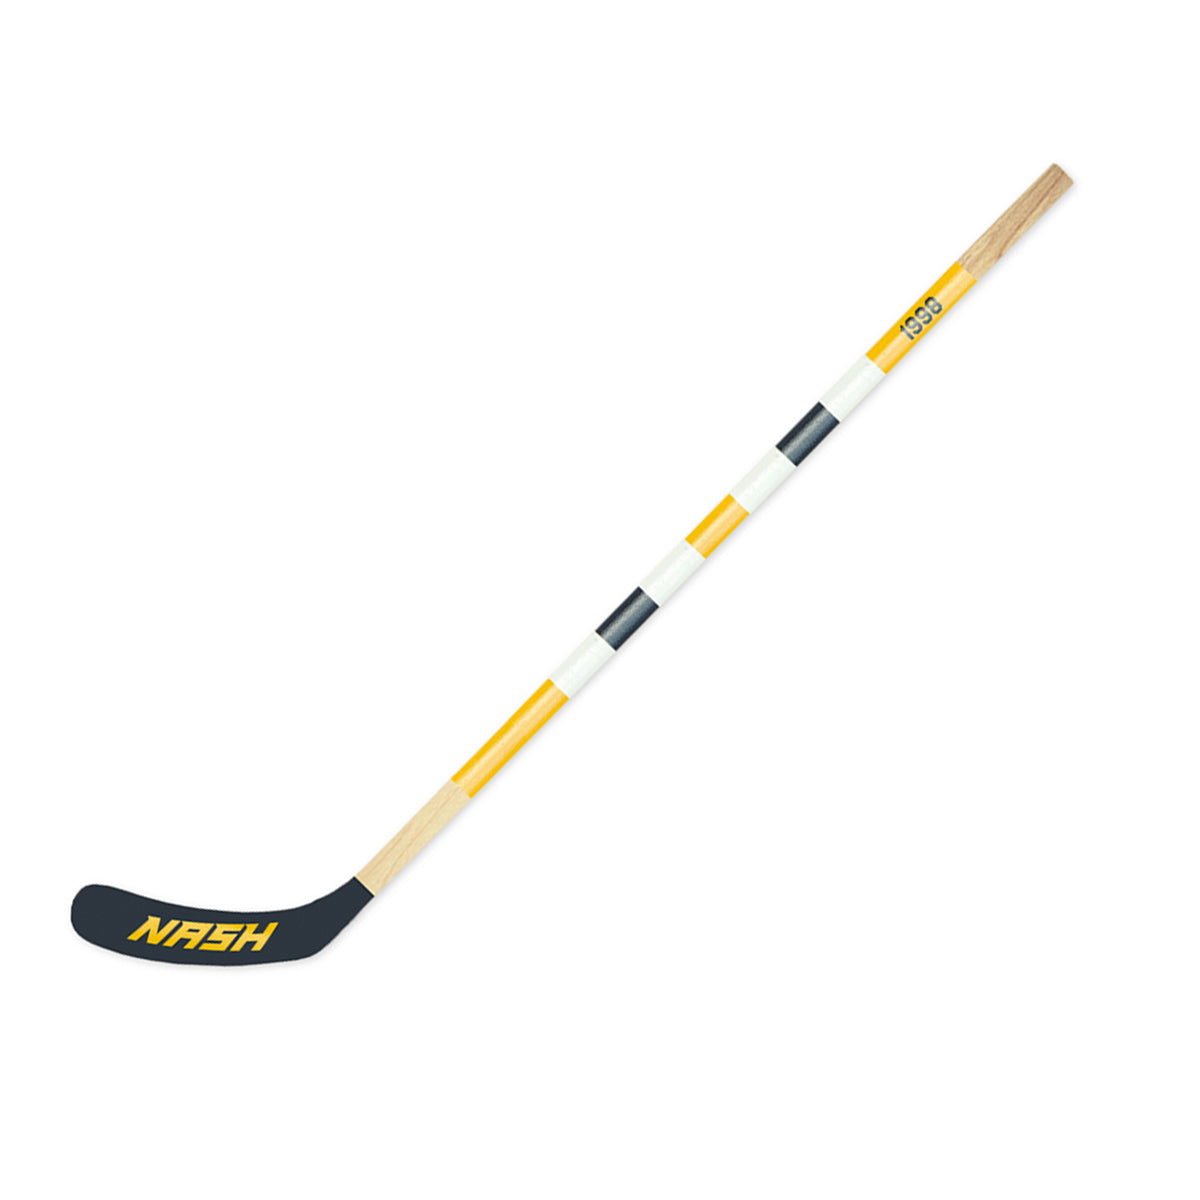 Nashville Mitchell Hockey Stick